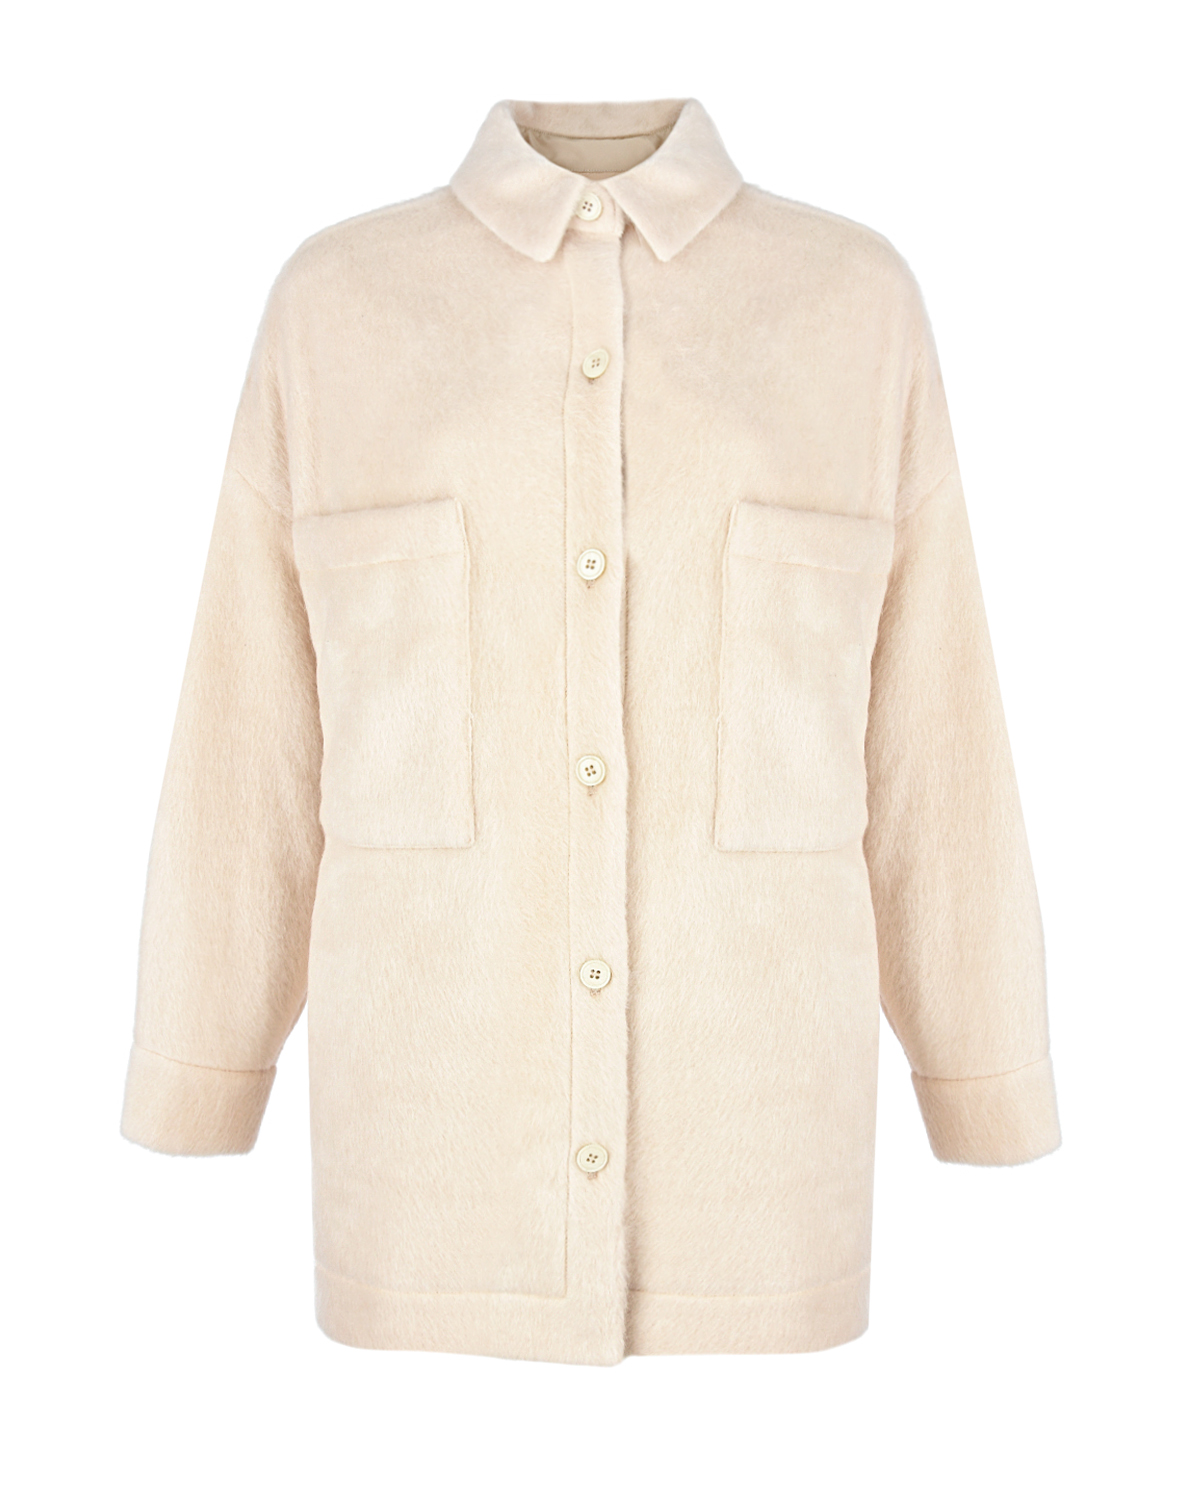 Куртка молочного цвета с вышивкой Forte dei Marmi Couture, размер 44